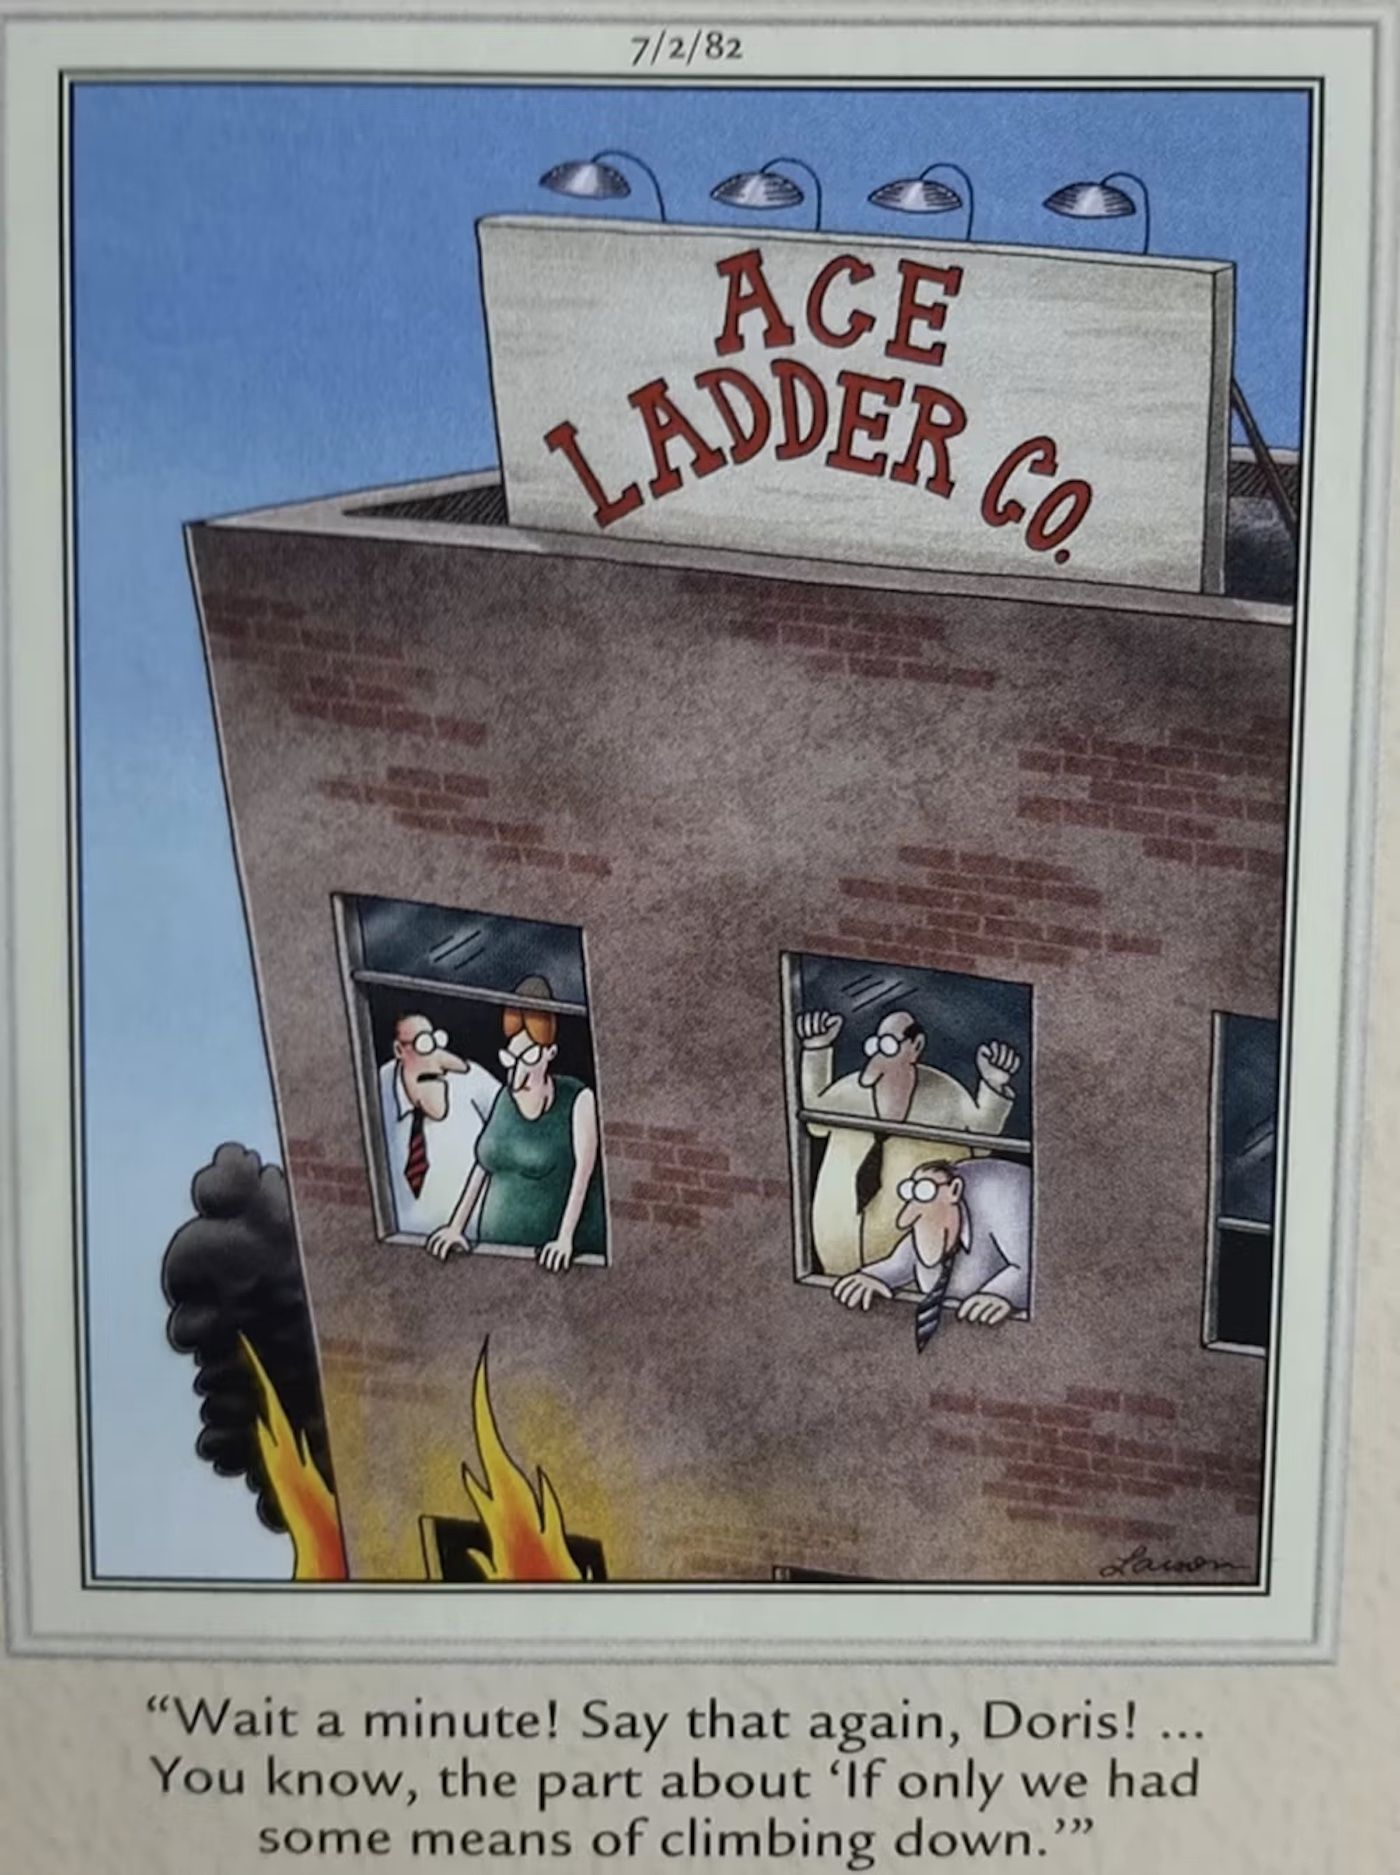 Far Side Ladder Company